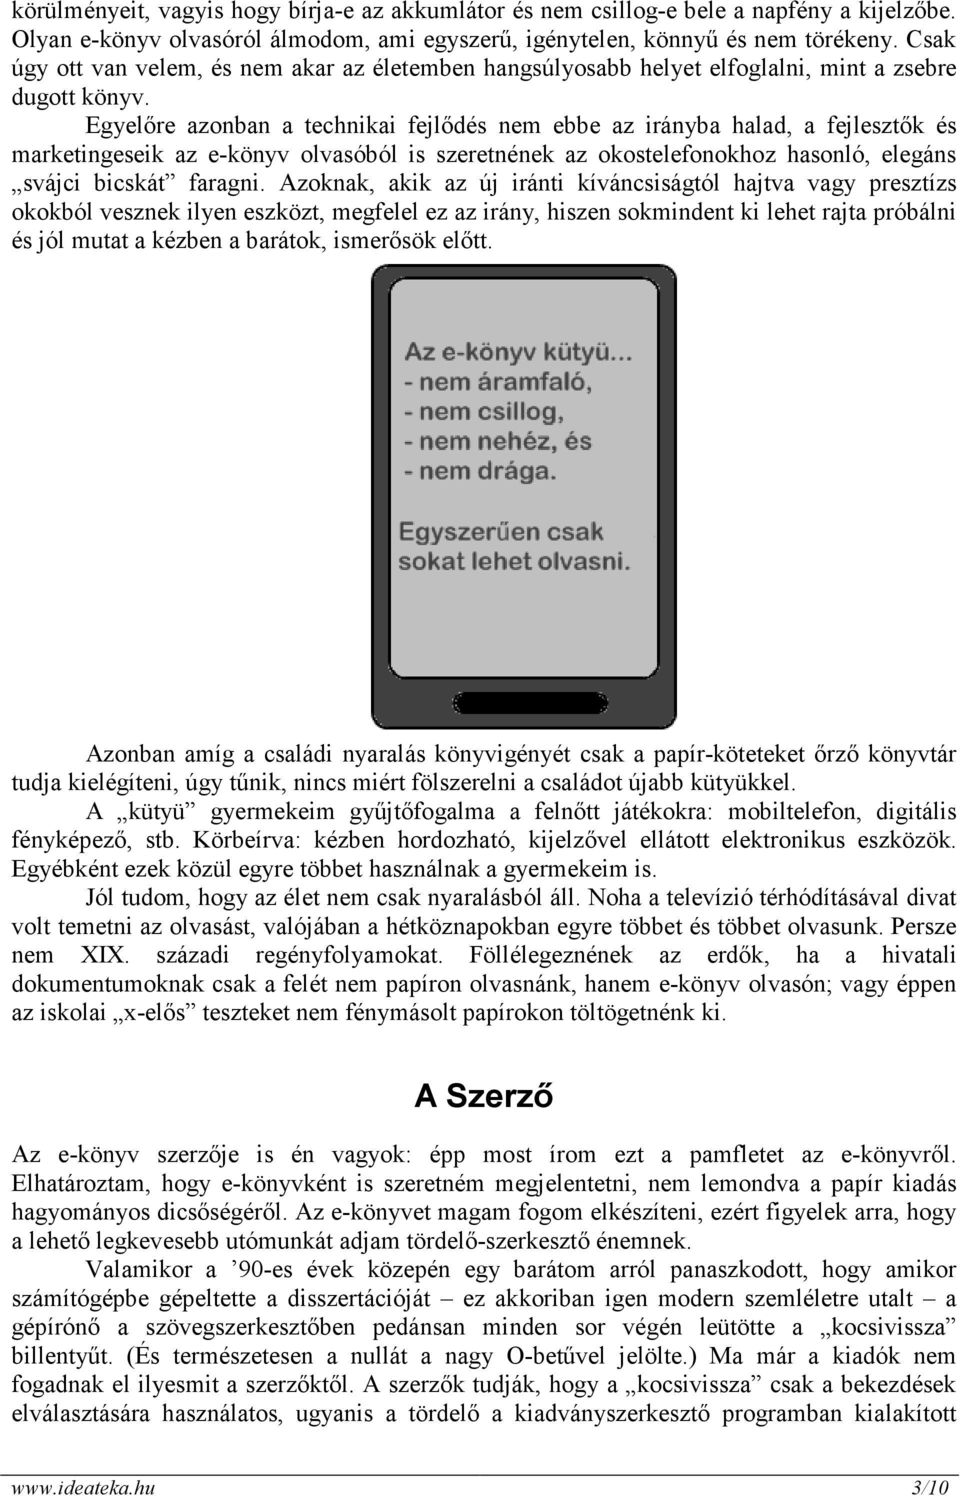 Egyelıre azonban a technikai fejlıdés nem ebbe az irányba halad, a fejlesztık és marketingeseik az e-könyv olvasóból is szeretnének az okostelefonokhoz hasonló, elegáns svájci bicskát faragni.